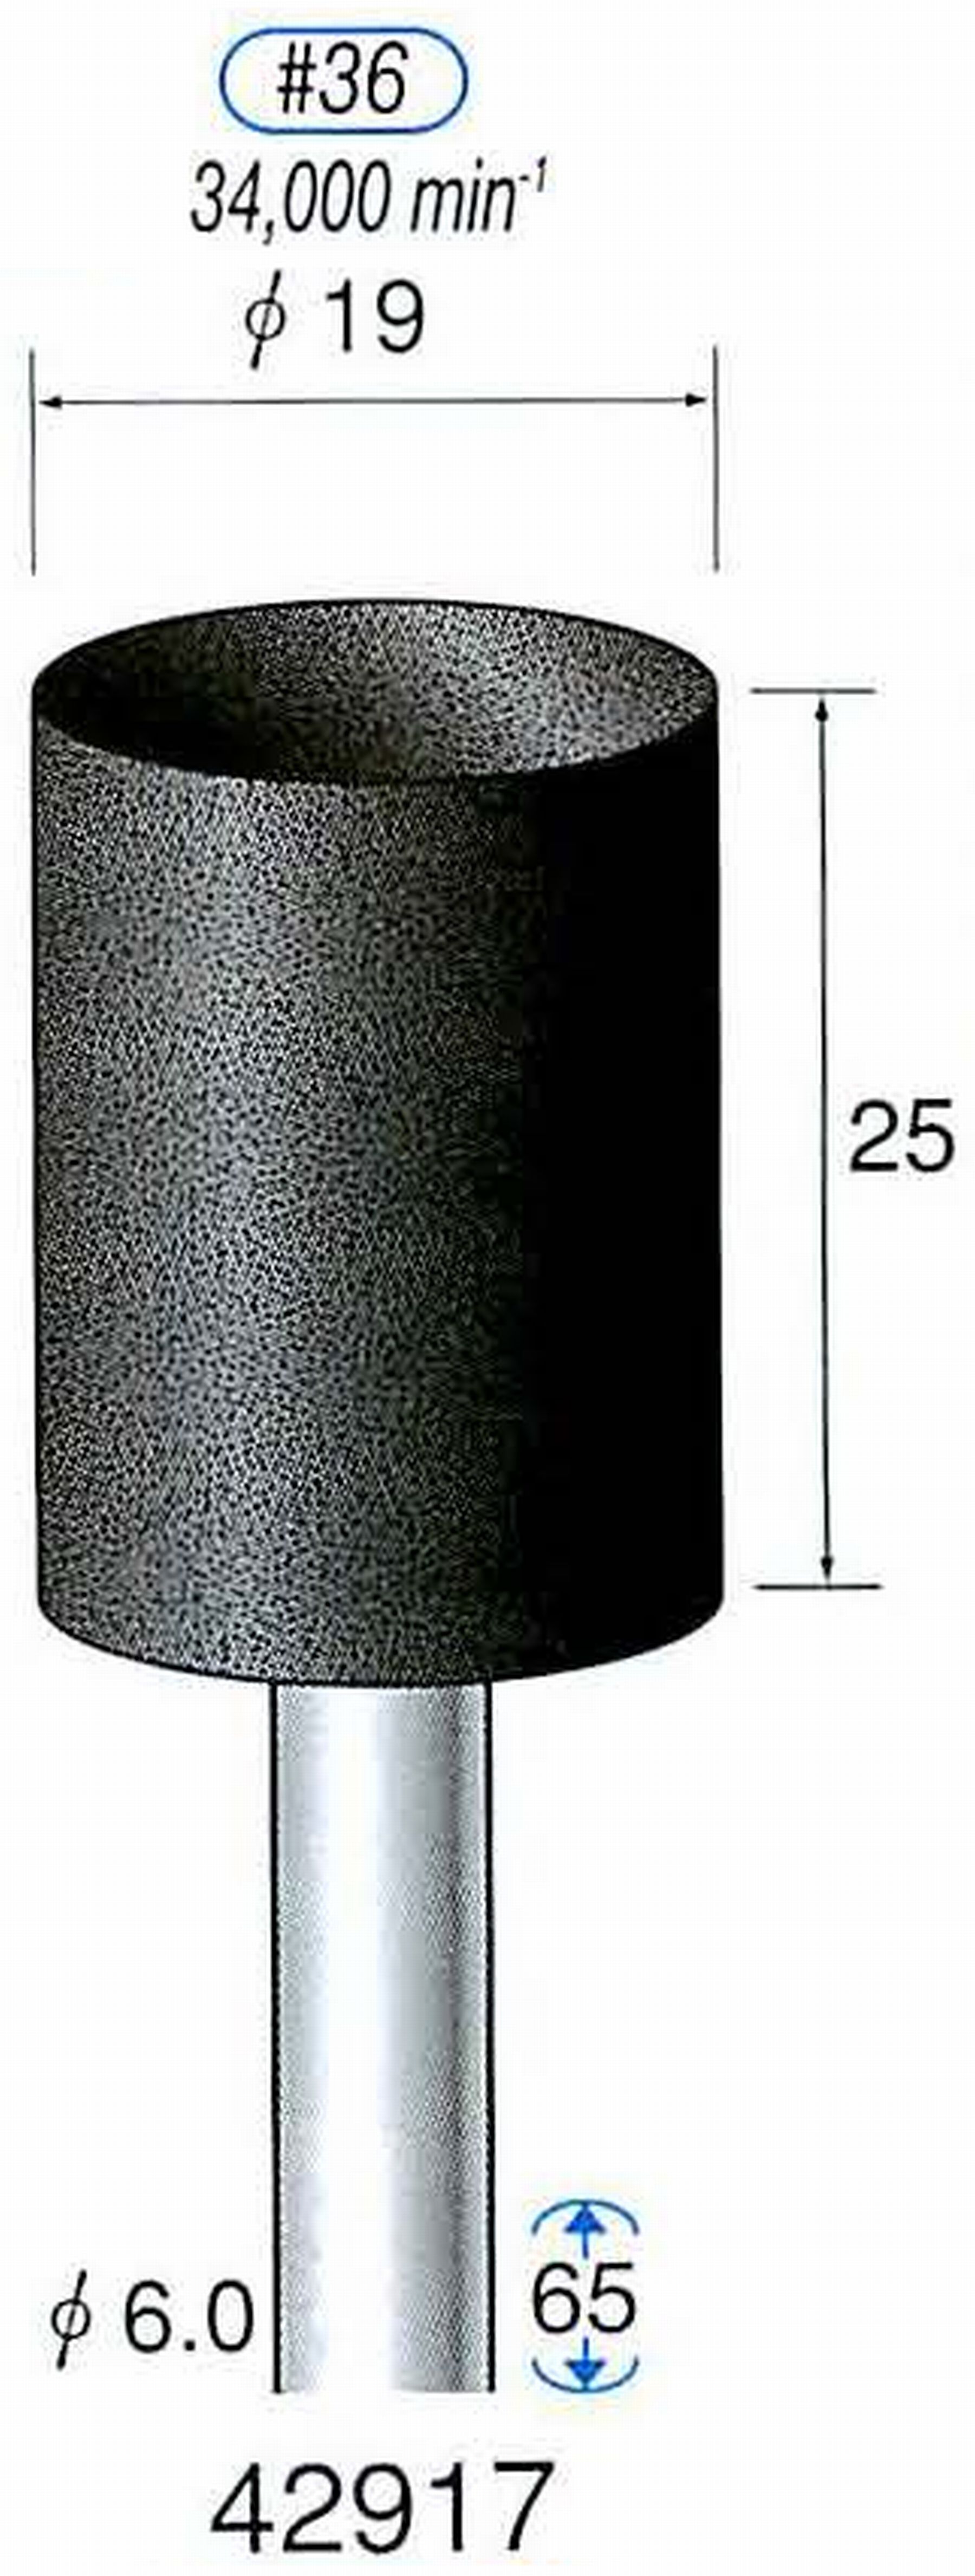 ナカニシ/NAKANISHI 軸付砥石(A砥粒) ブラック砥石 軸径(シャンク) φ6.0mm 42917